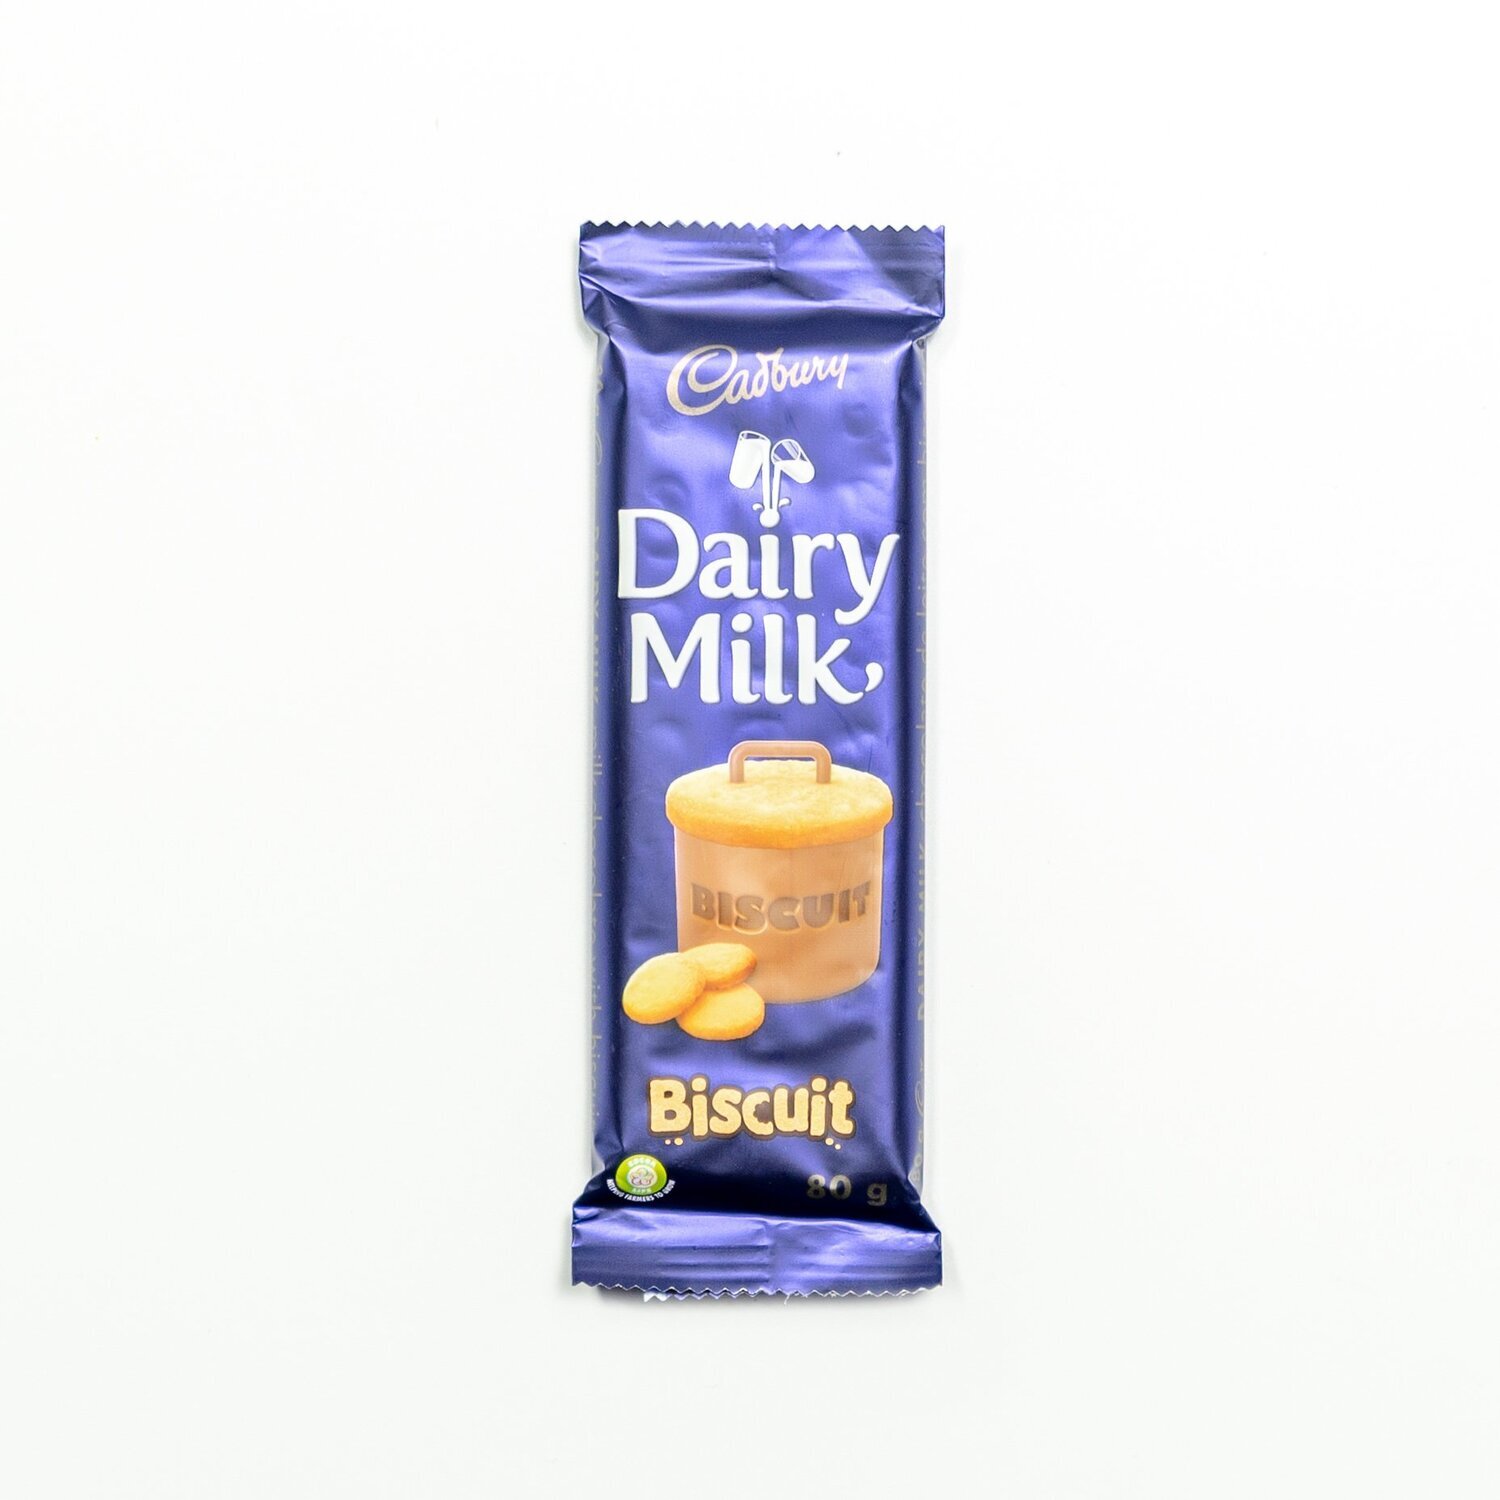 Cadbury dairy milk biscuit